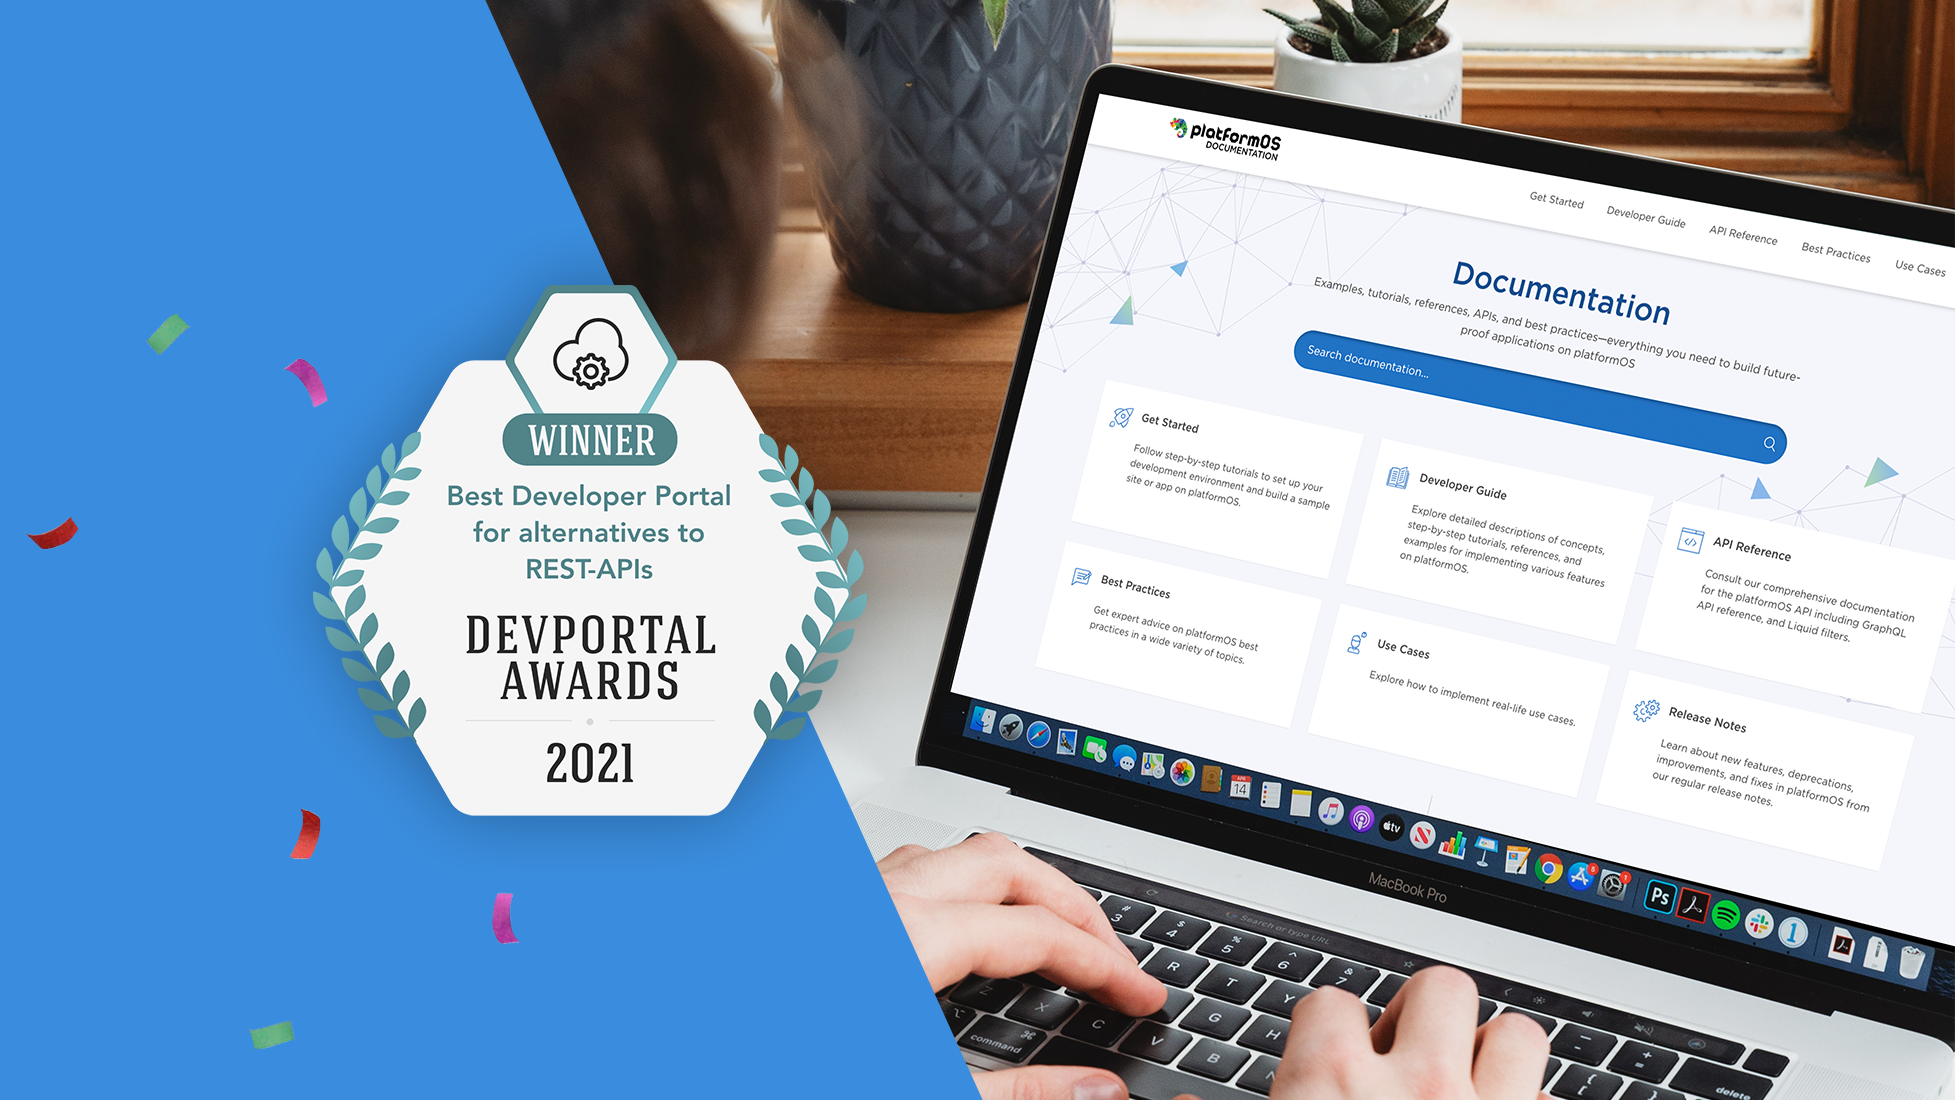 platformOS Wins Best Developer Portal for Alternatives to REST-APIs at the DevPortal Awards 2021